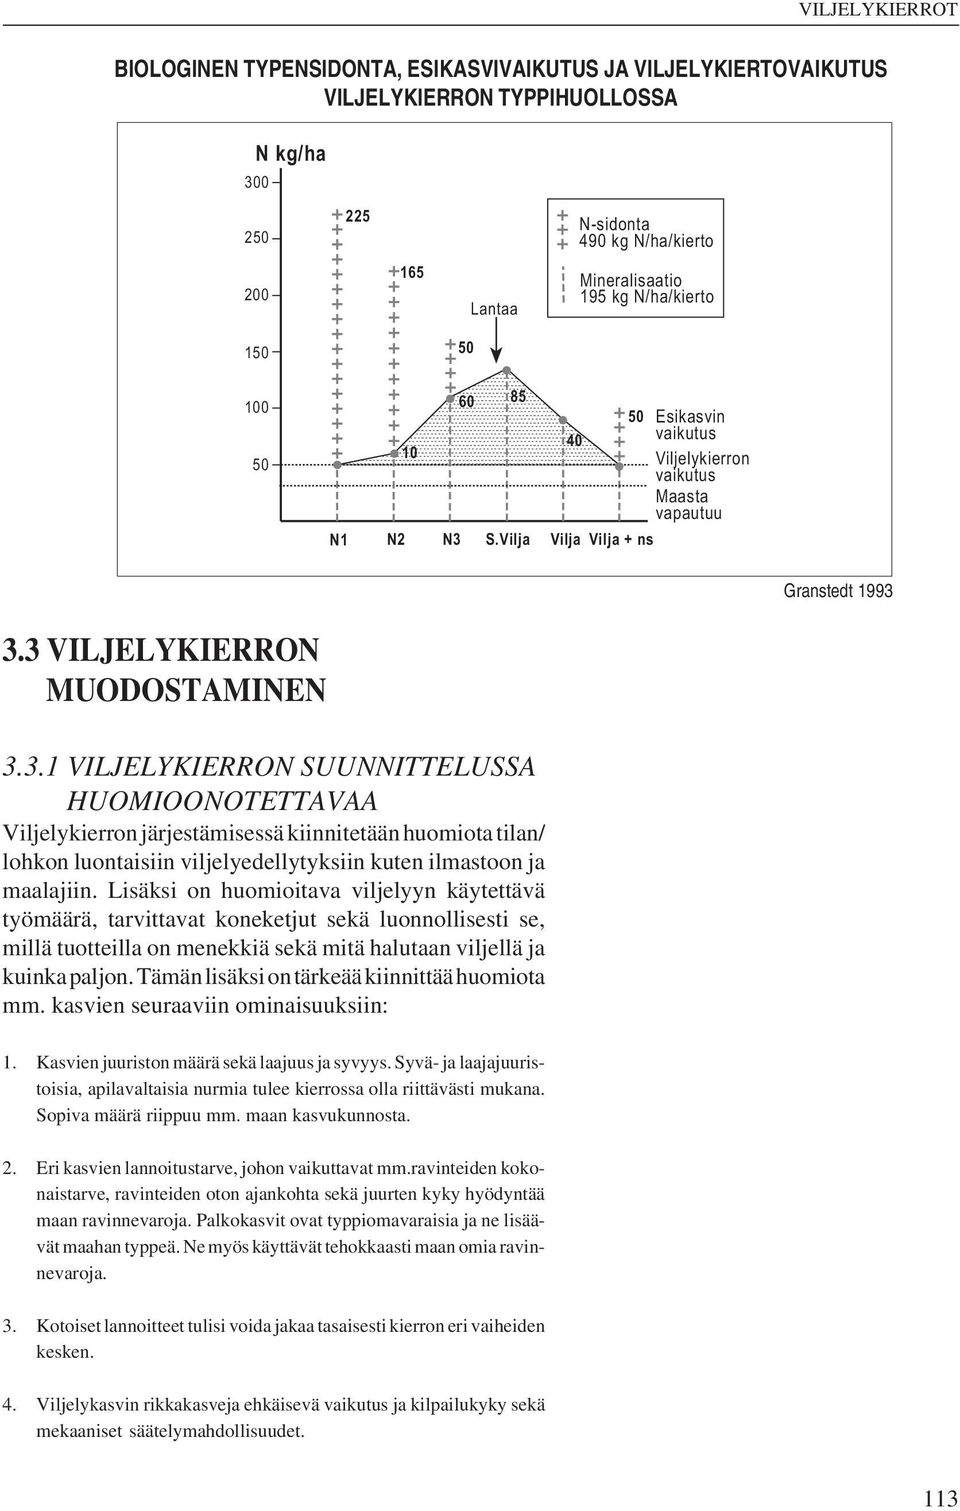 S.Vilja 40 50 Vilja Vilja + ns Esikasvin vaikutus Viljelykierron vaikutus Maasta vapautuu Granstedt 1993 